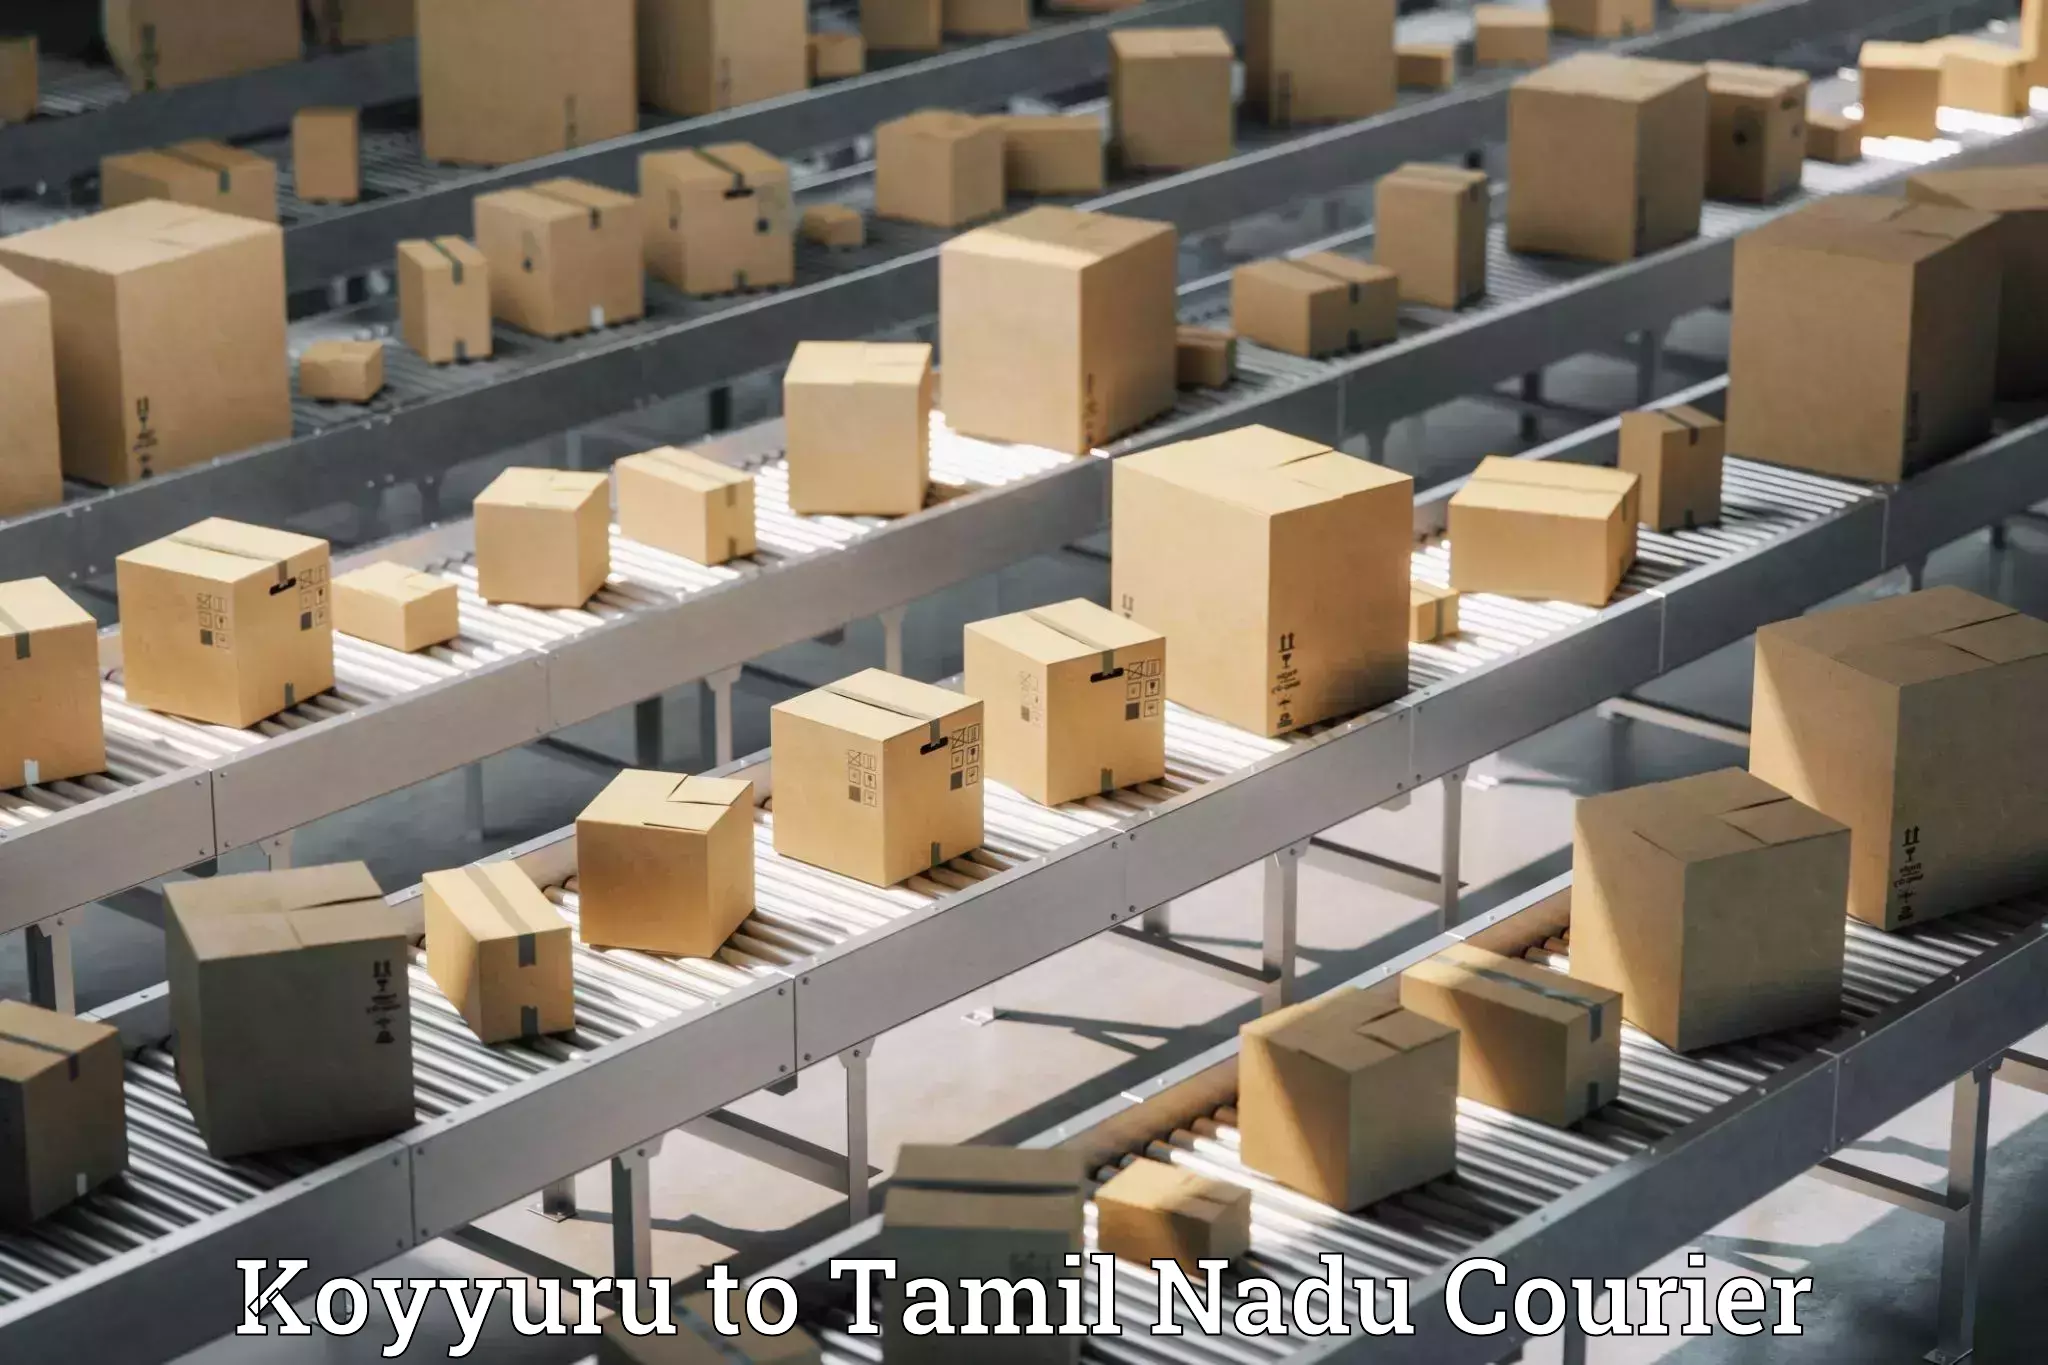 Premium courier services Koyyuru to Tamil Nadu